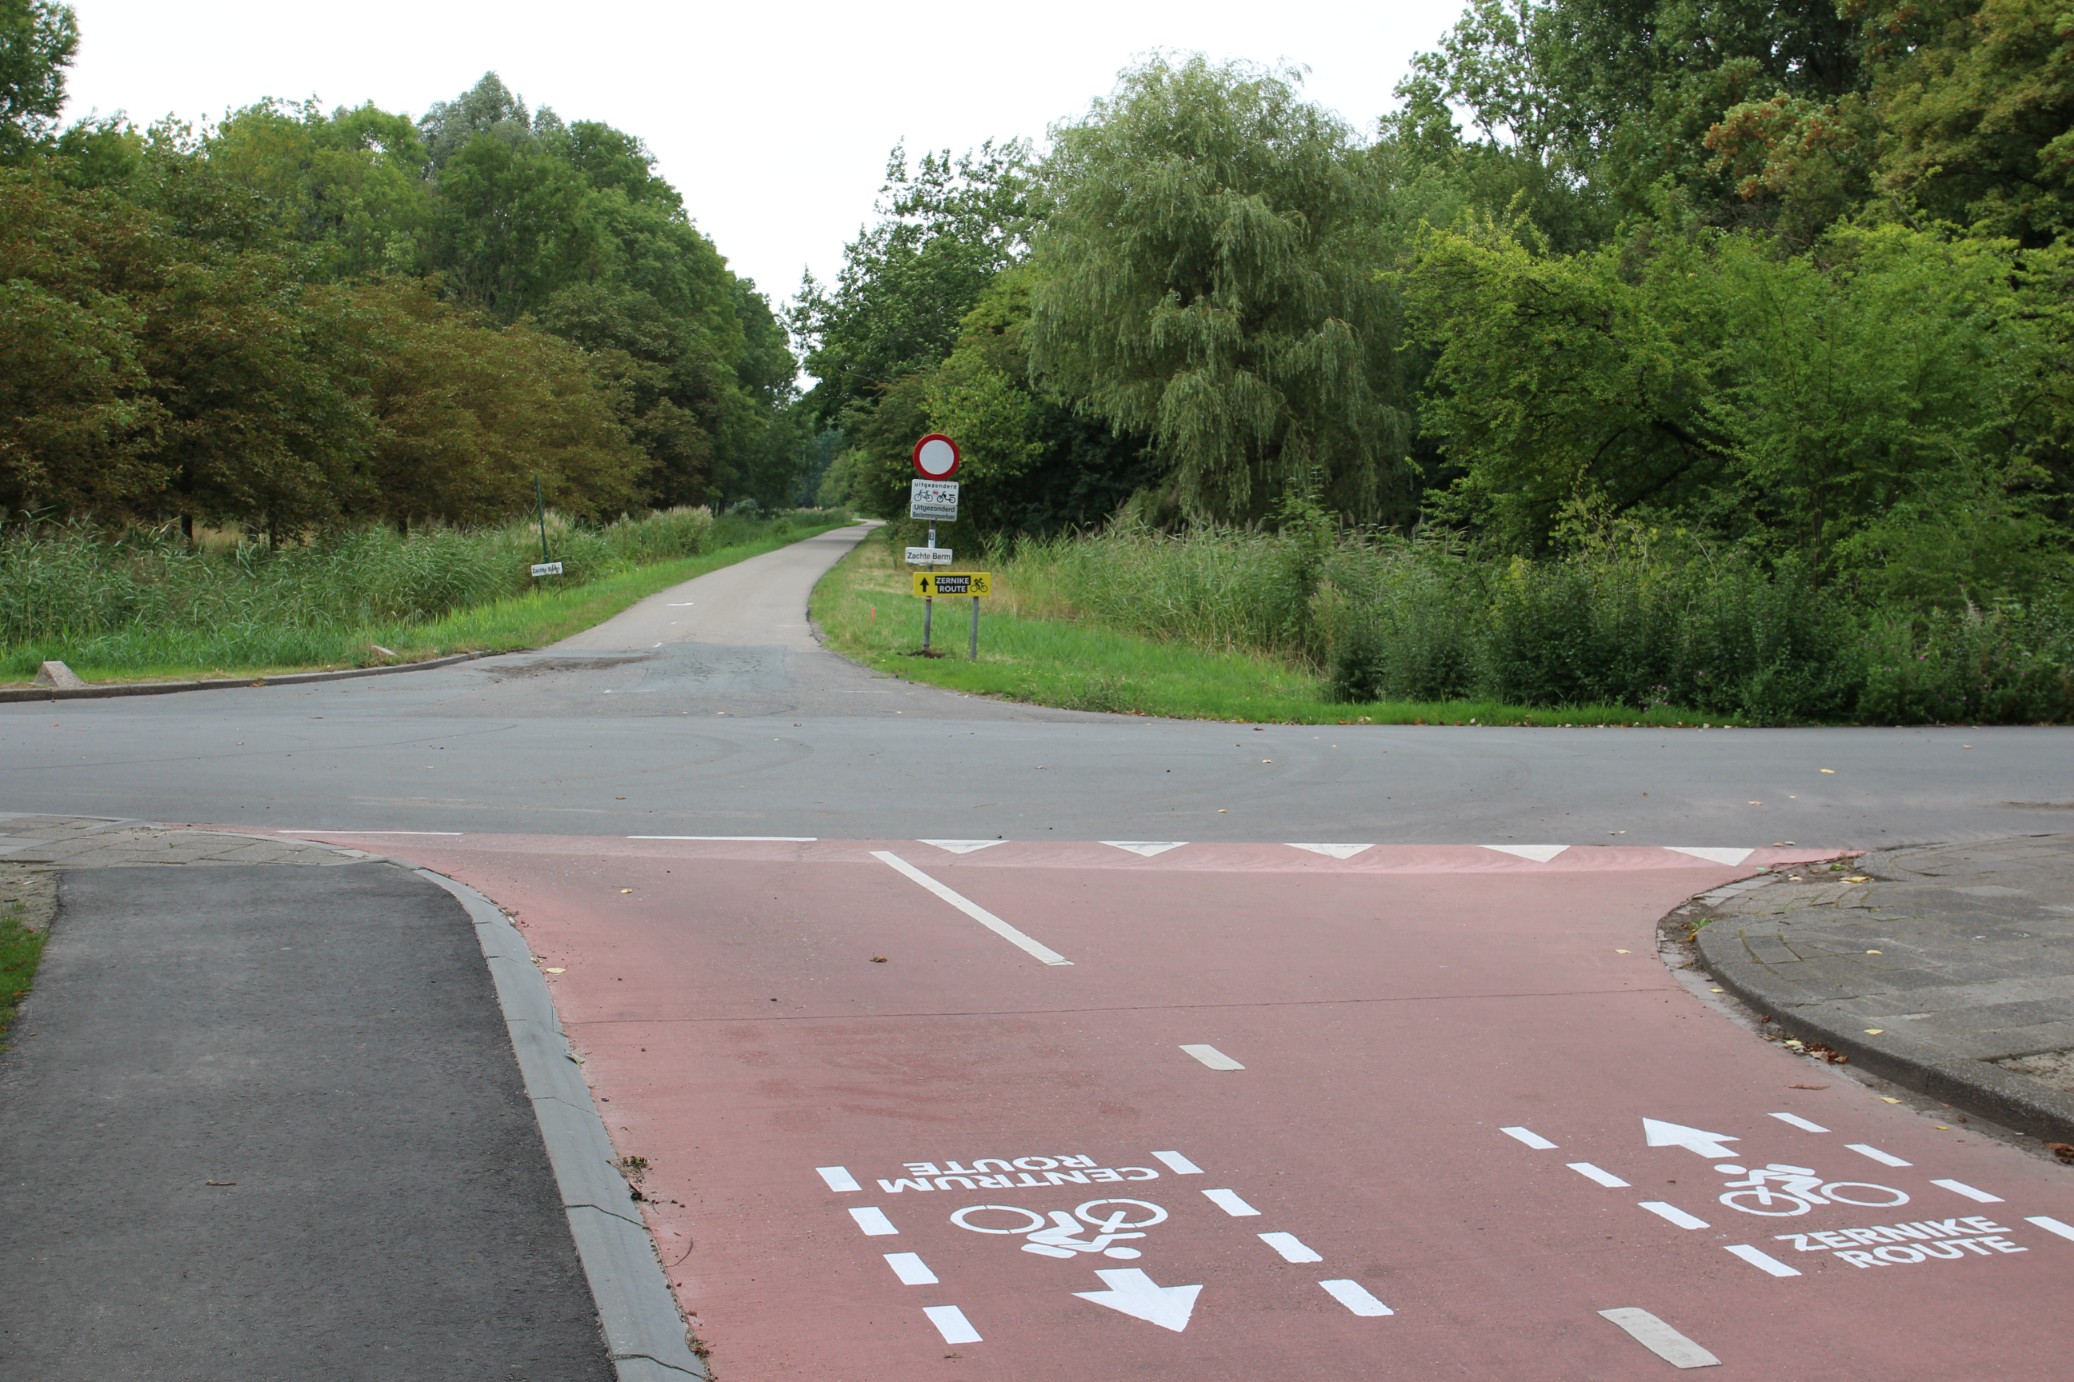 New route via Paddepoelsterweg